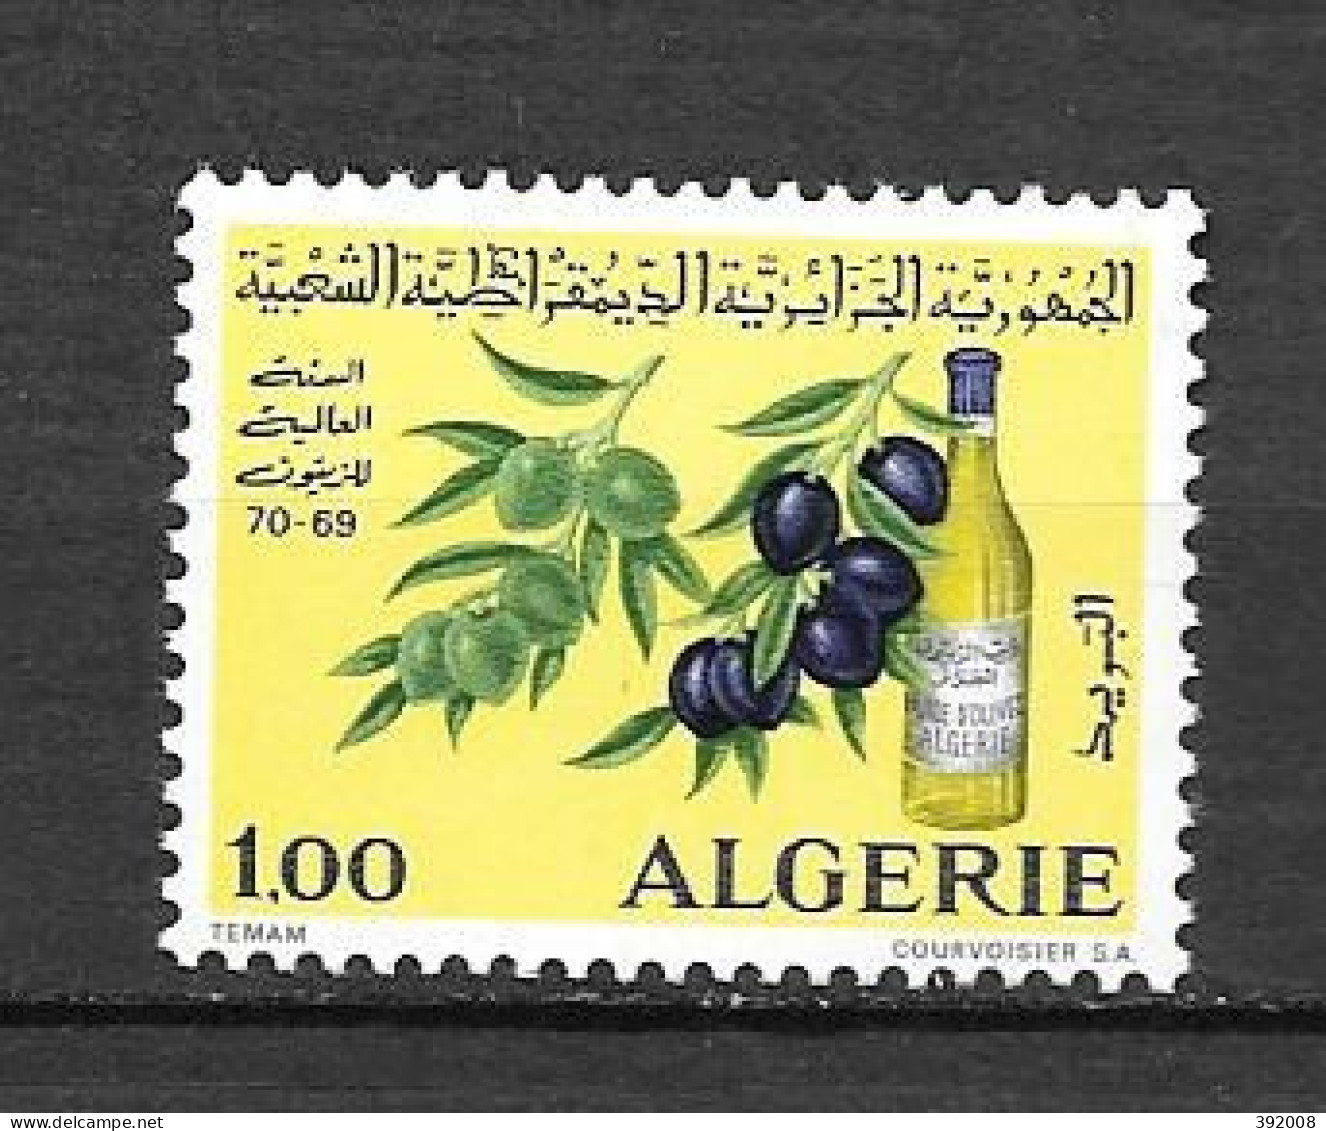 1970 - 517 **MNH - Année Oleicolemondiale - Algérie (1962-...)